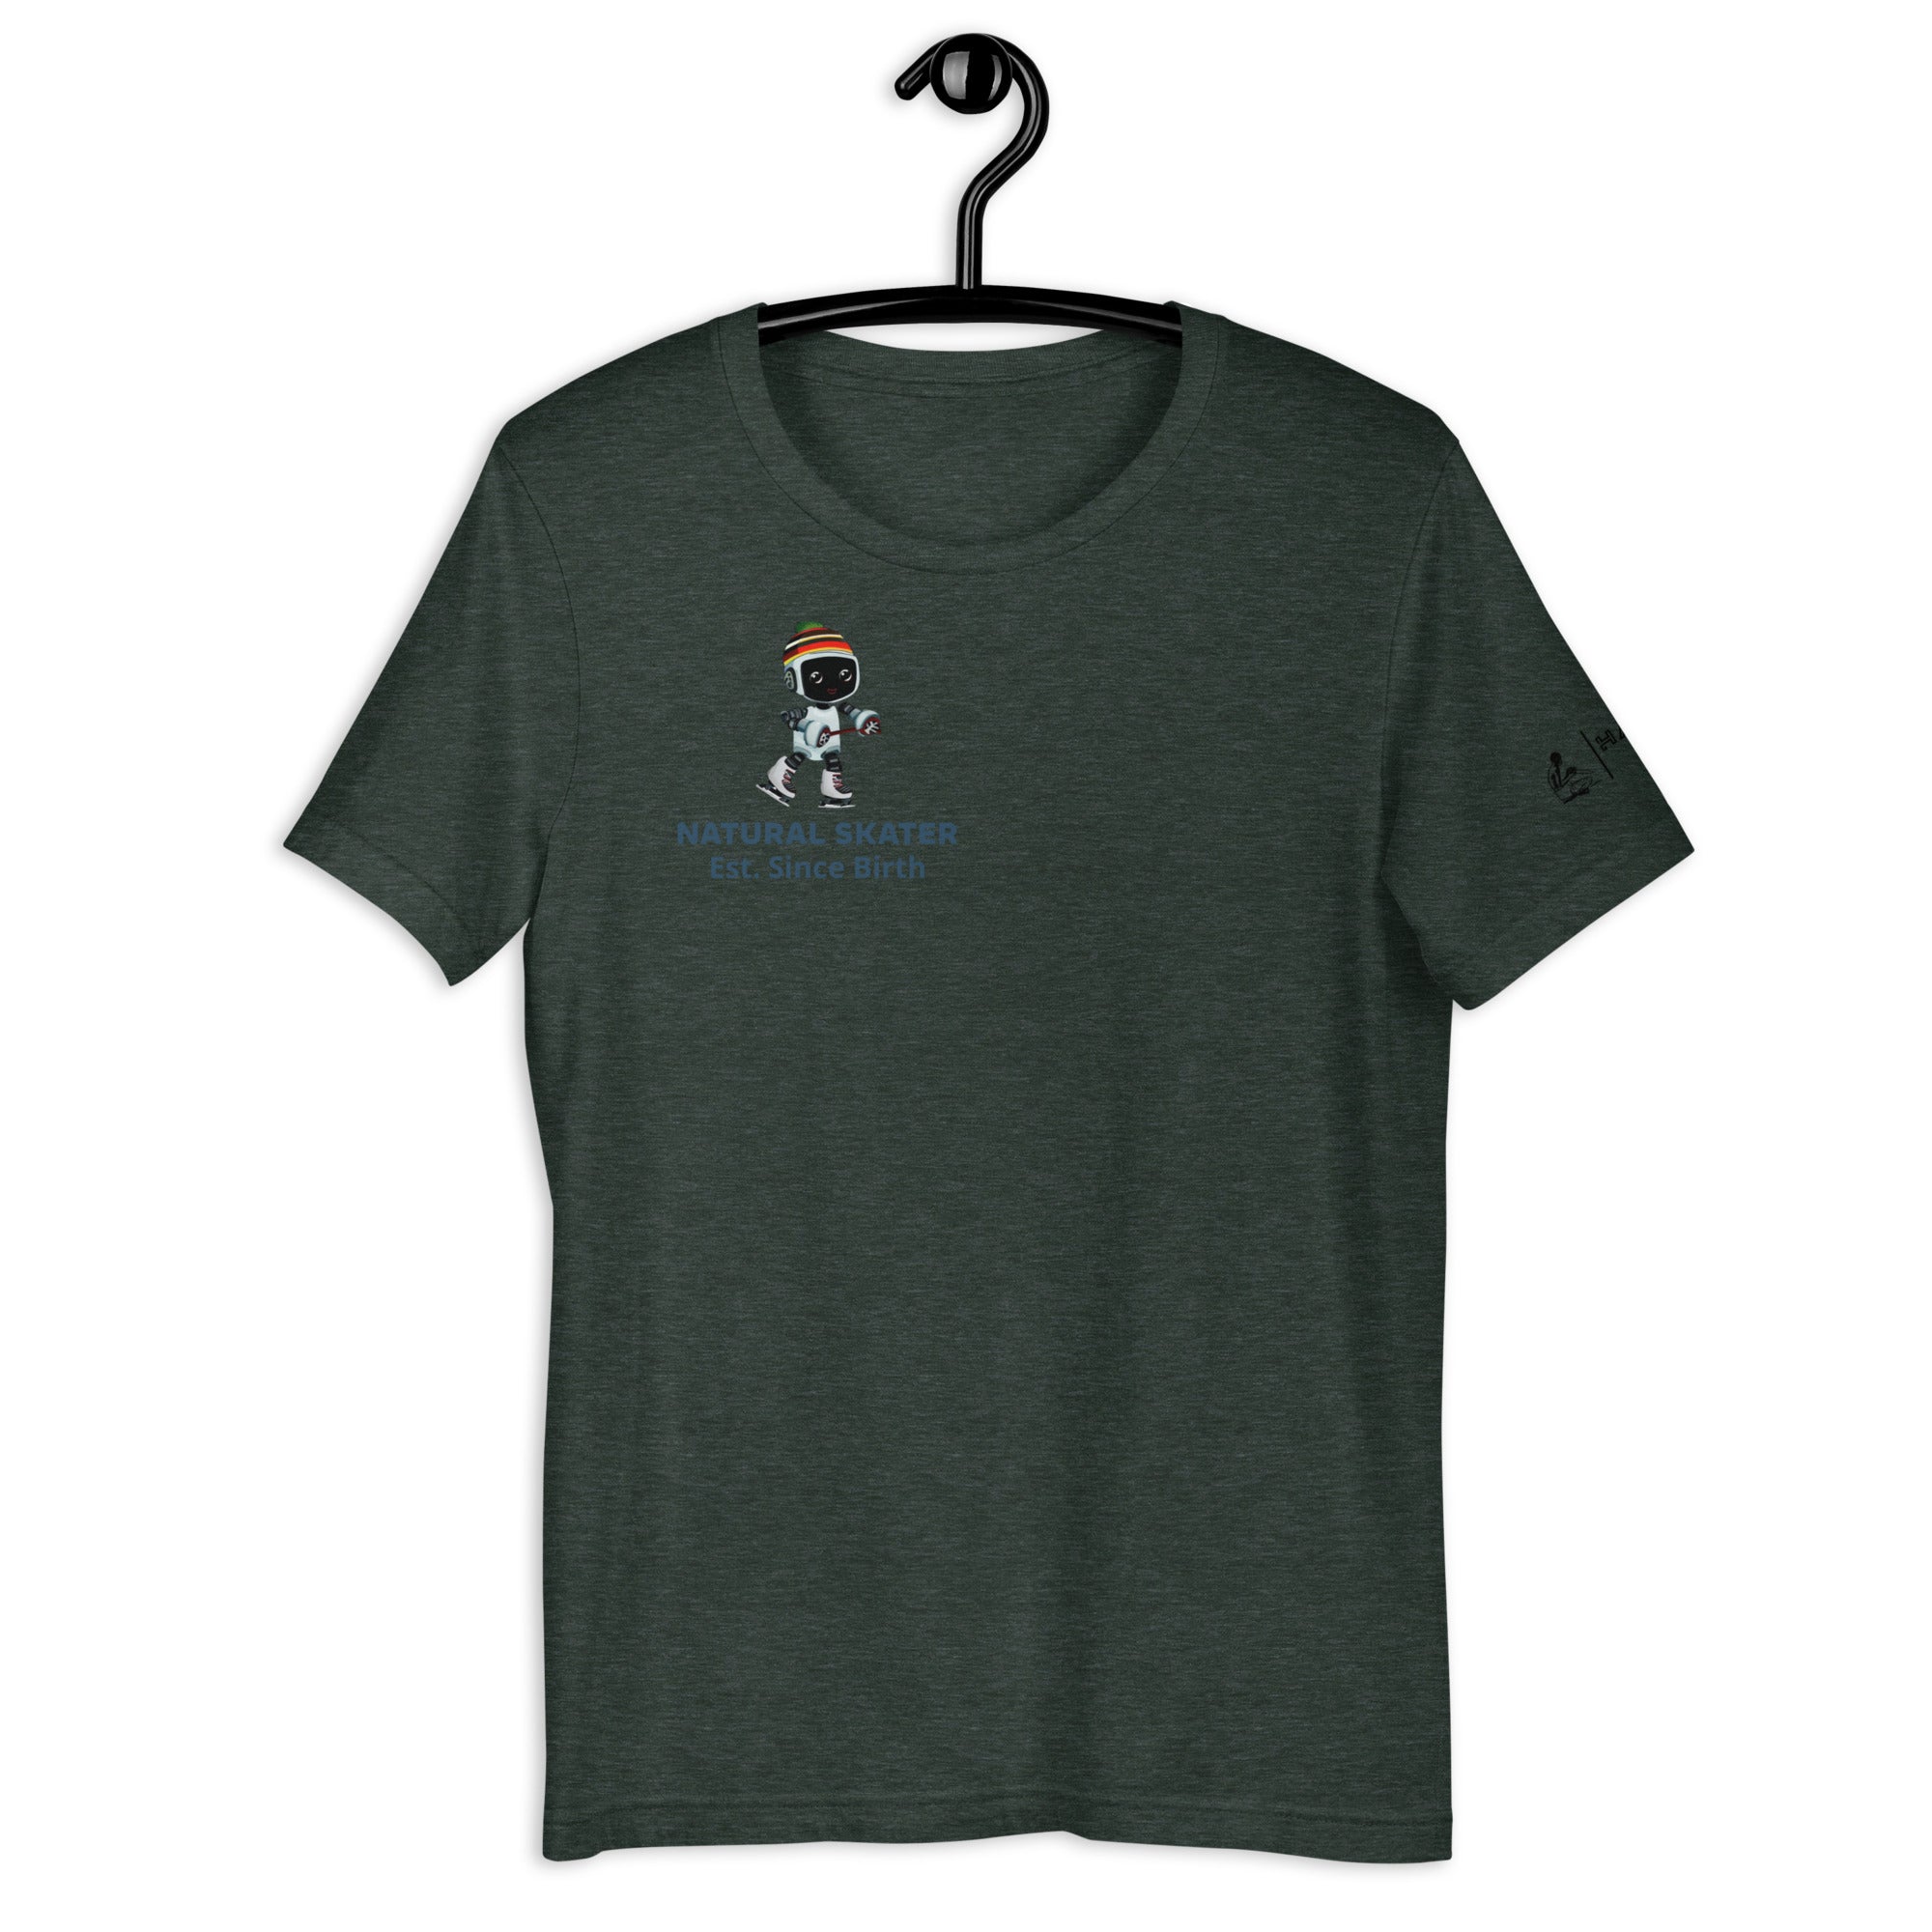 Natural Skater - Unisex t-shirt